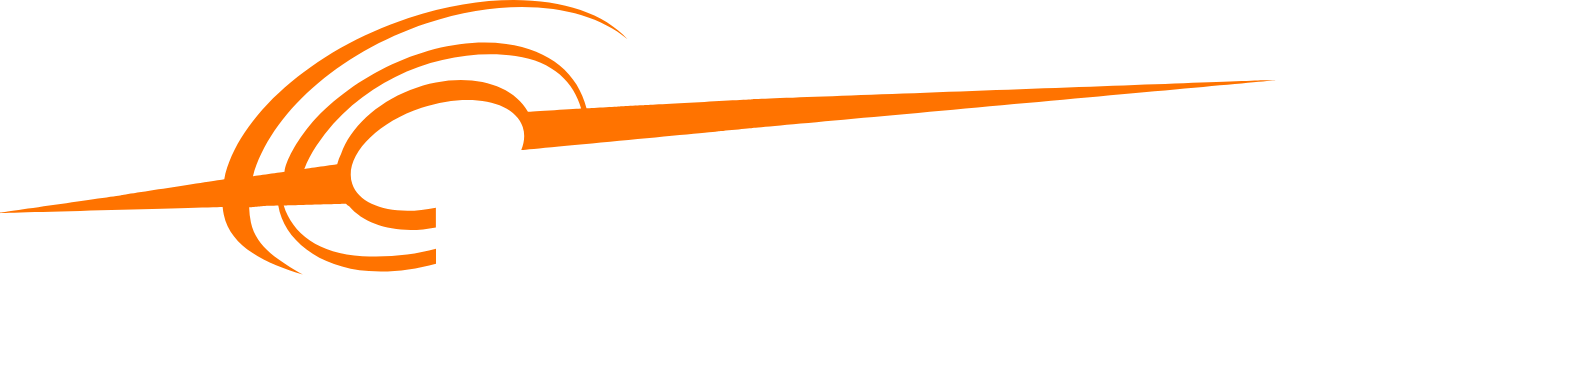 Elia Group logo large for dark backgrounds (transparent PNG)